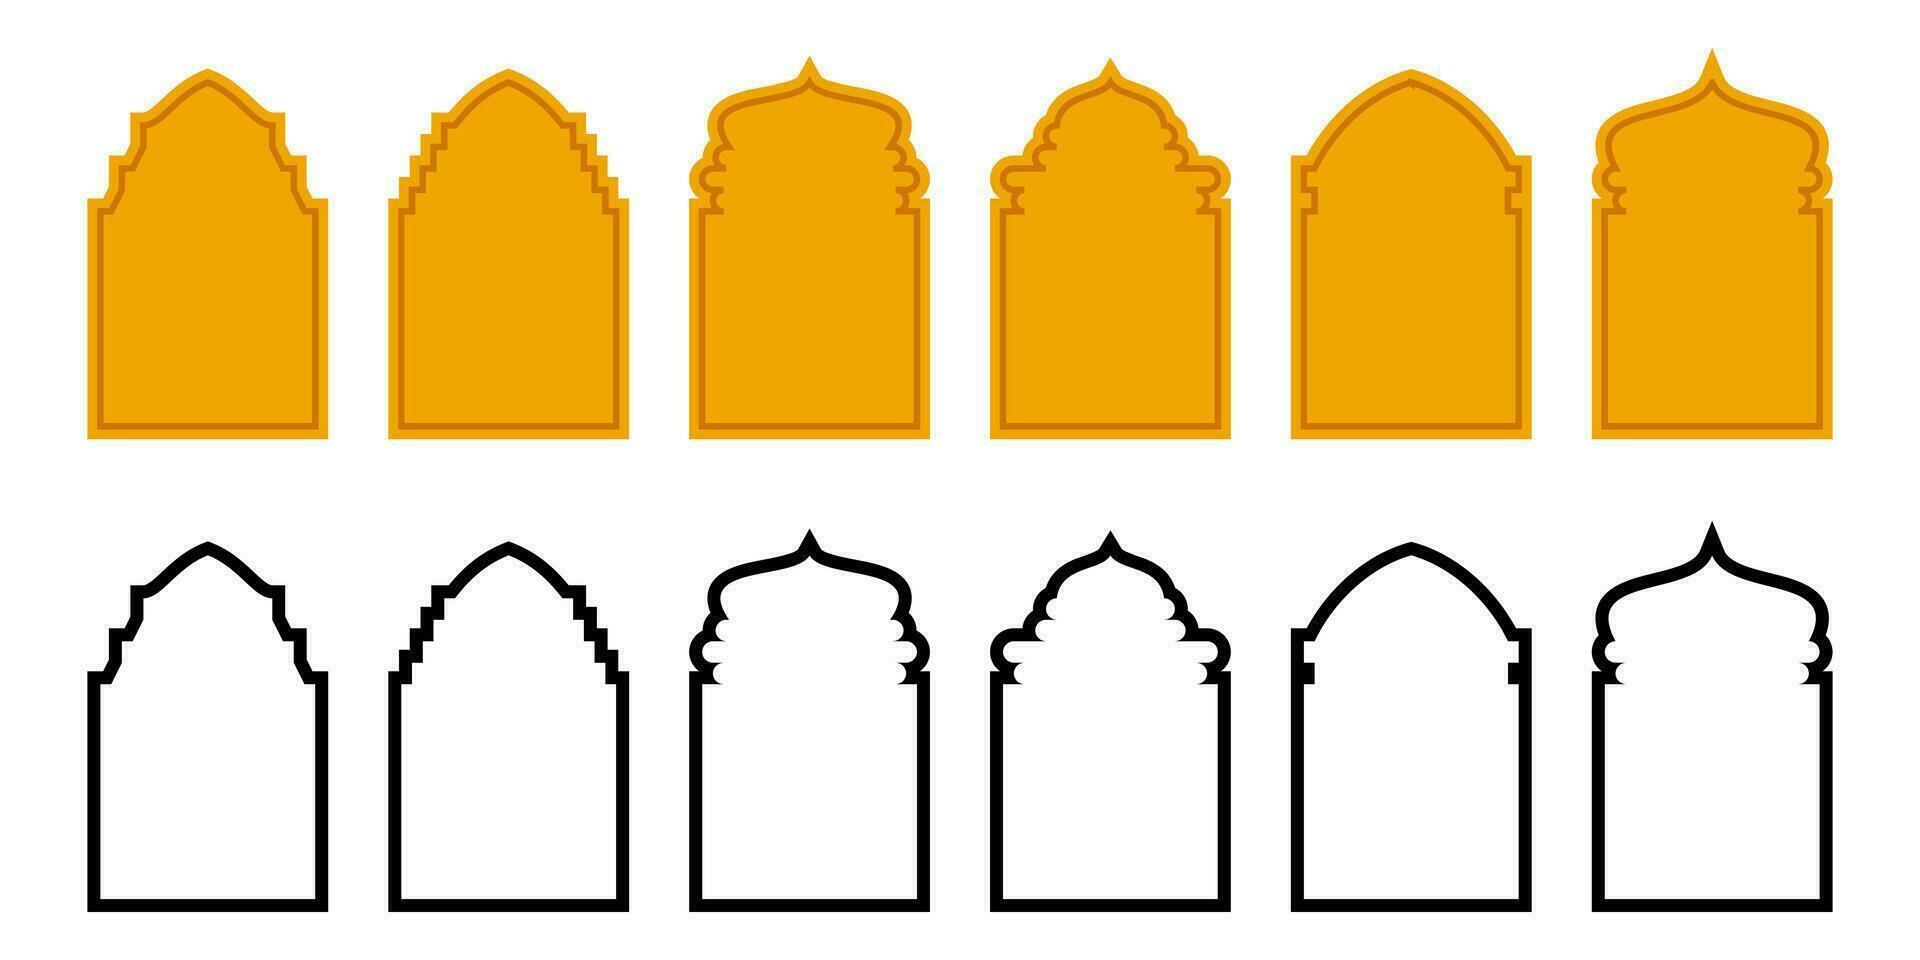 ensemble de islamique style des illustrations de silhouettes et lignes. élégant conception de des portes, les fenêtres, dômes, mosquées, lanternes, vecteur pour islamique vacances.